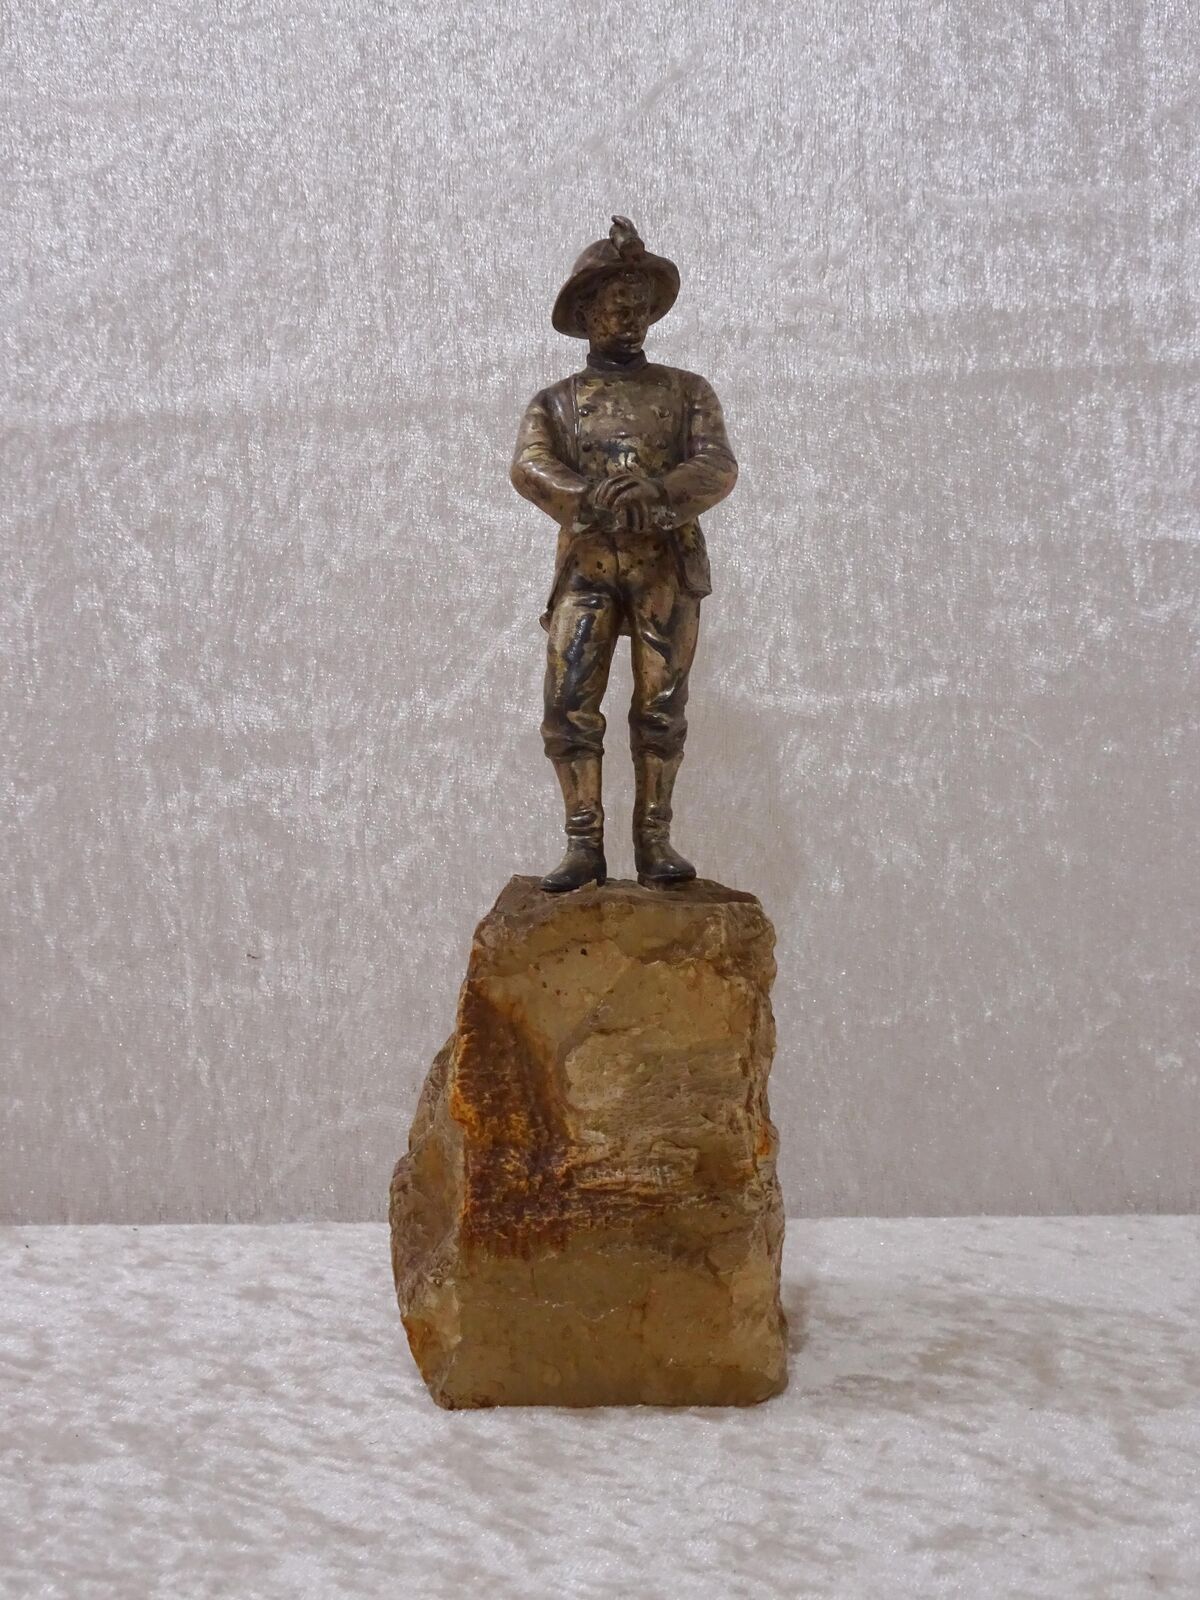 npGjK8 - Metal Design Stone Based Figure - Soldier - Vintage